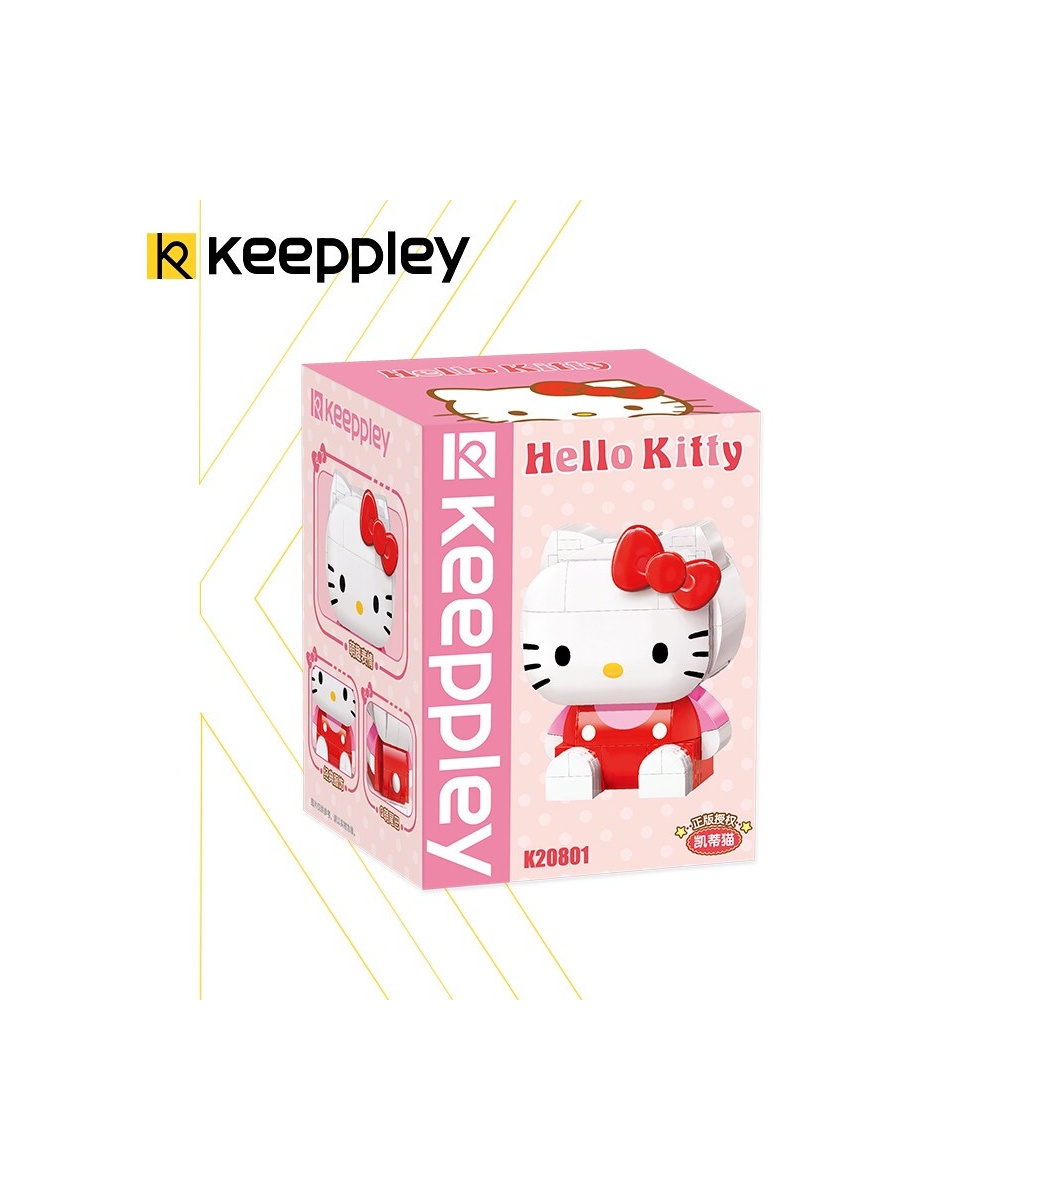 Keeppley K20801 Hello Kitty Series Hello Kitty Building Blocks Toy Set 